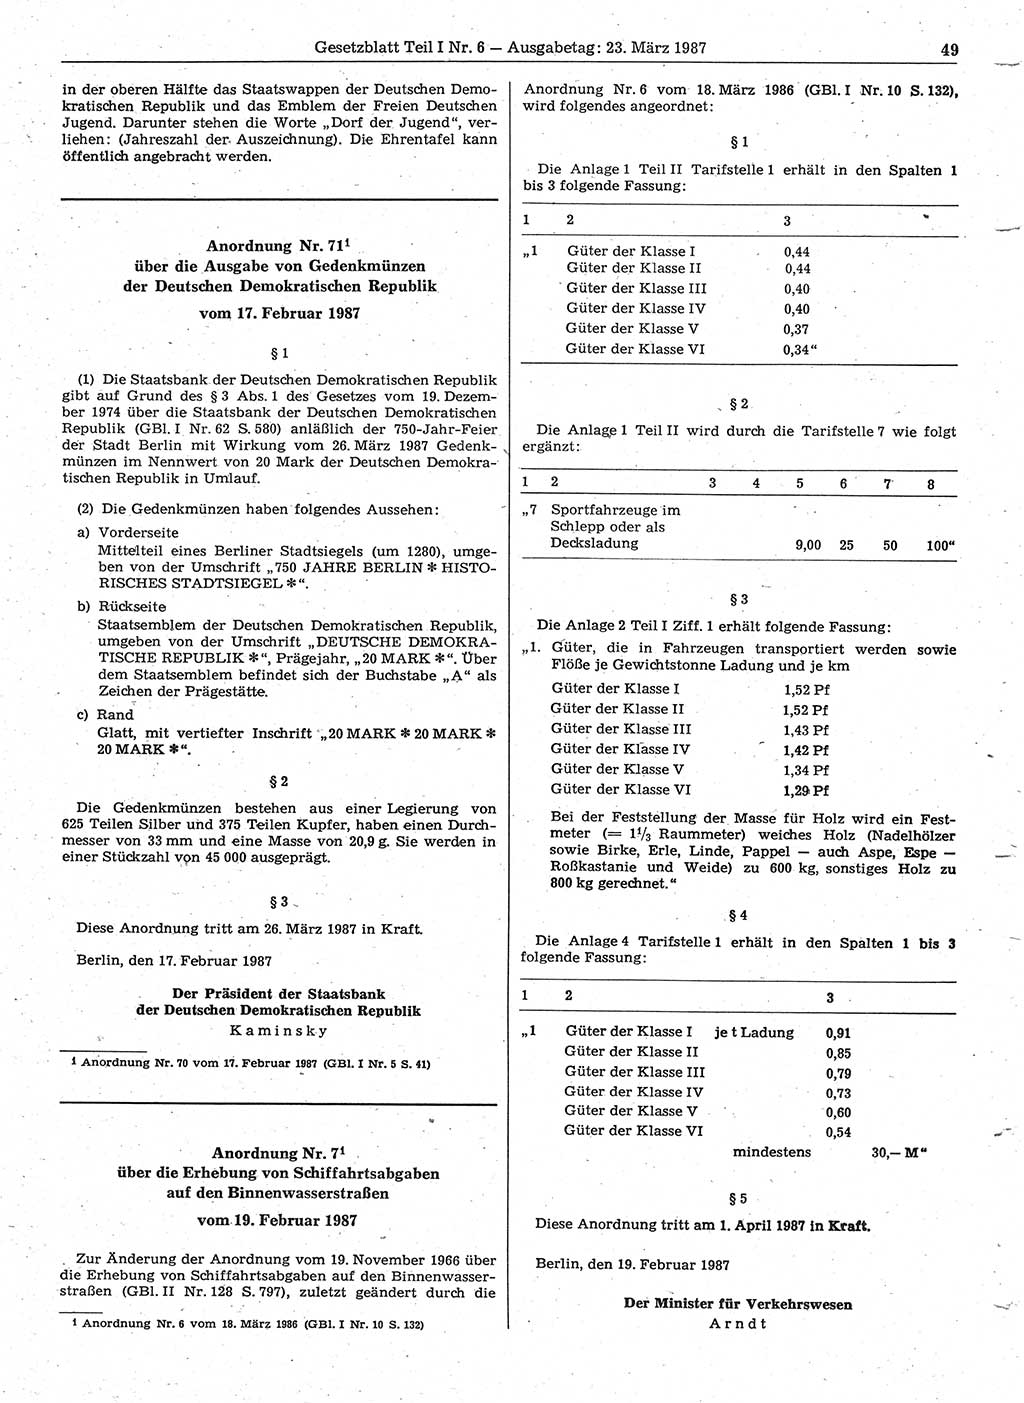 Gesetzblatt (GBl.) der Deutschen Demokratischen Republik (DDR) Teil Ⅰ 1987, Seite 49 (GBl. DDR Ⅰ 1987, S. 49)